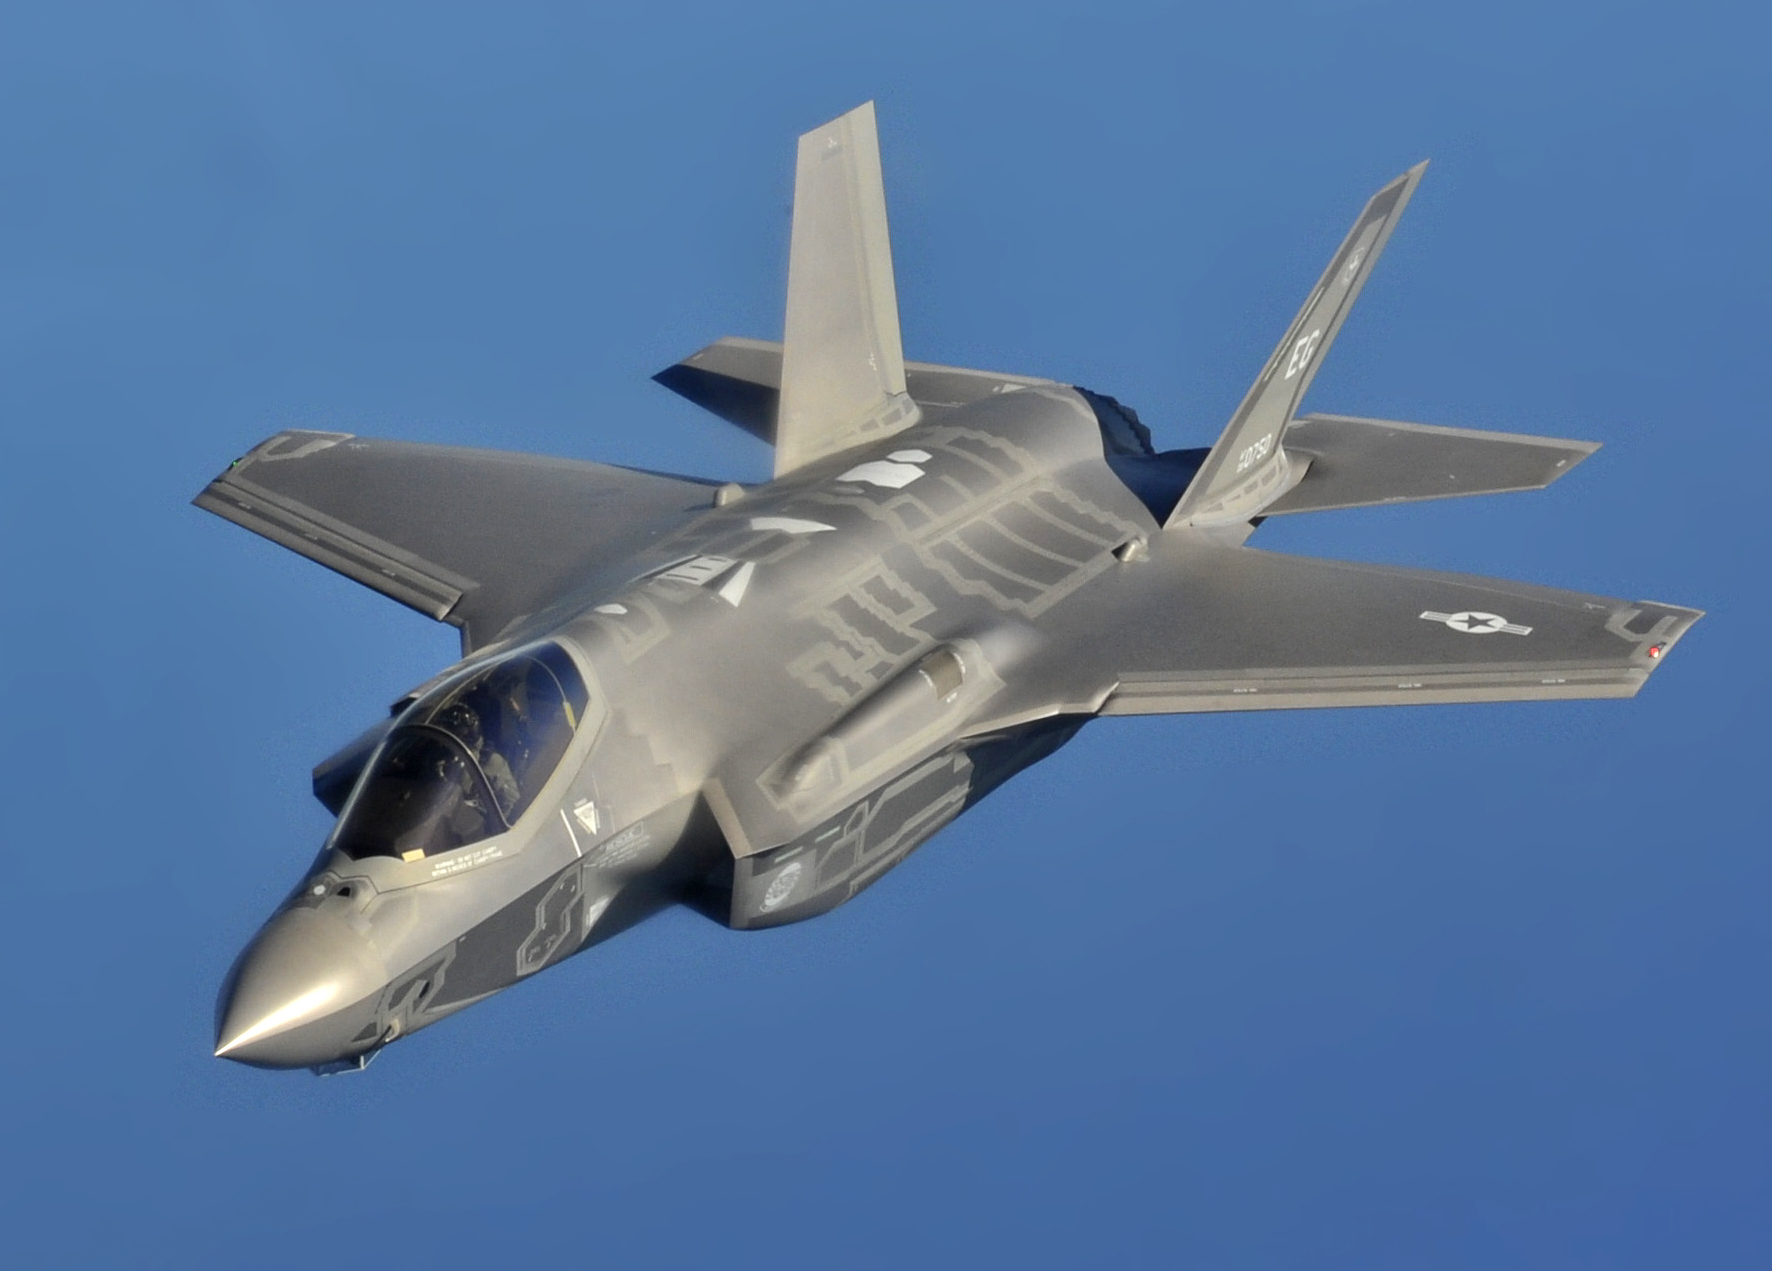 Czechy składają ofertę na zakup amerykańskich myśliwców piątej generacji F-35 Lightning II w technologii stealth